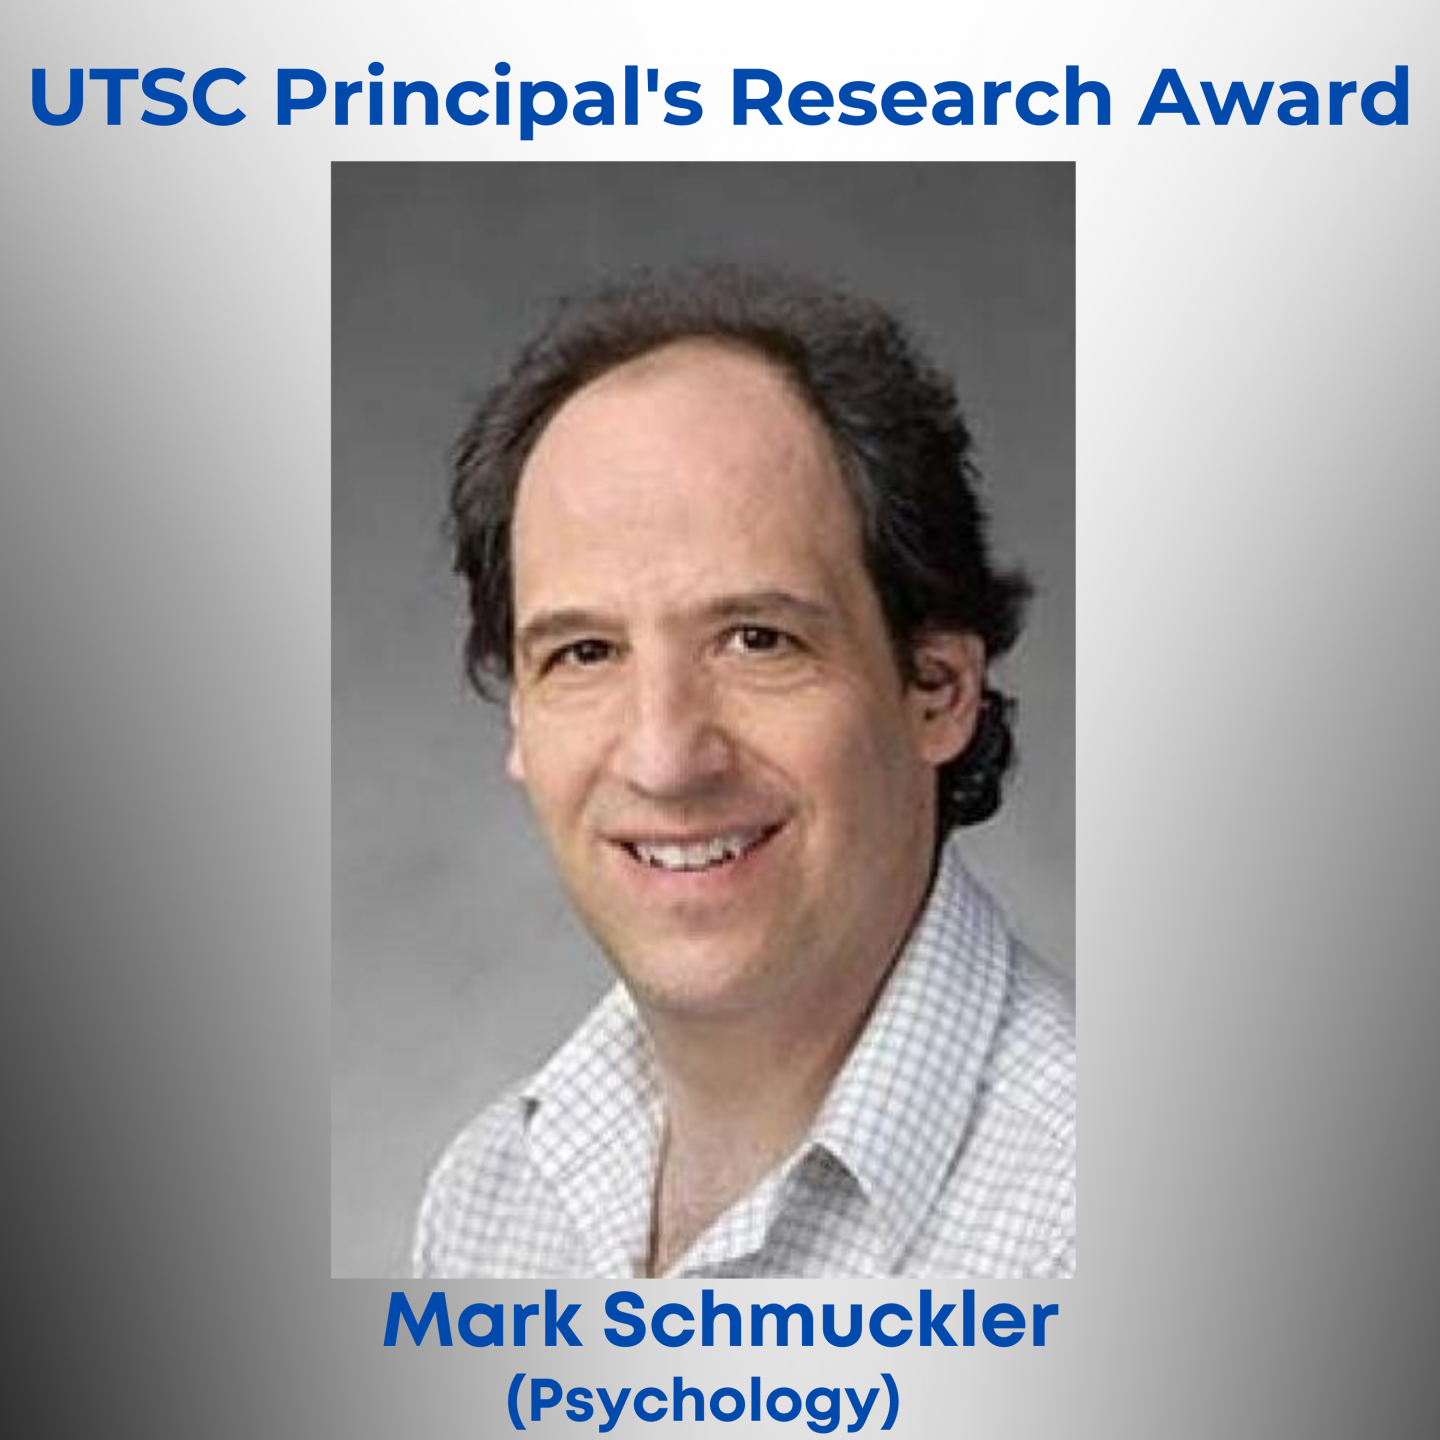 Professor Mark Schmuckler